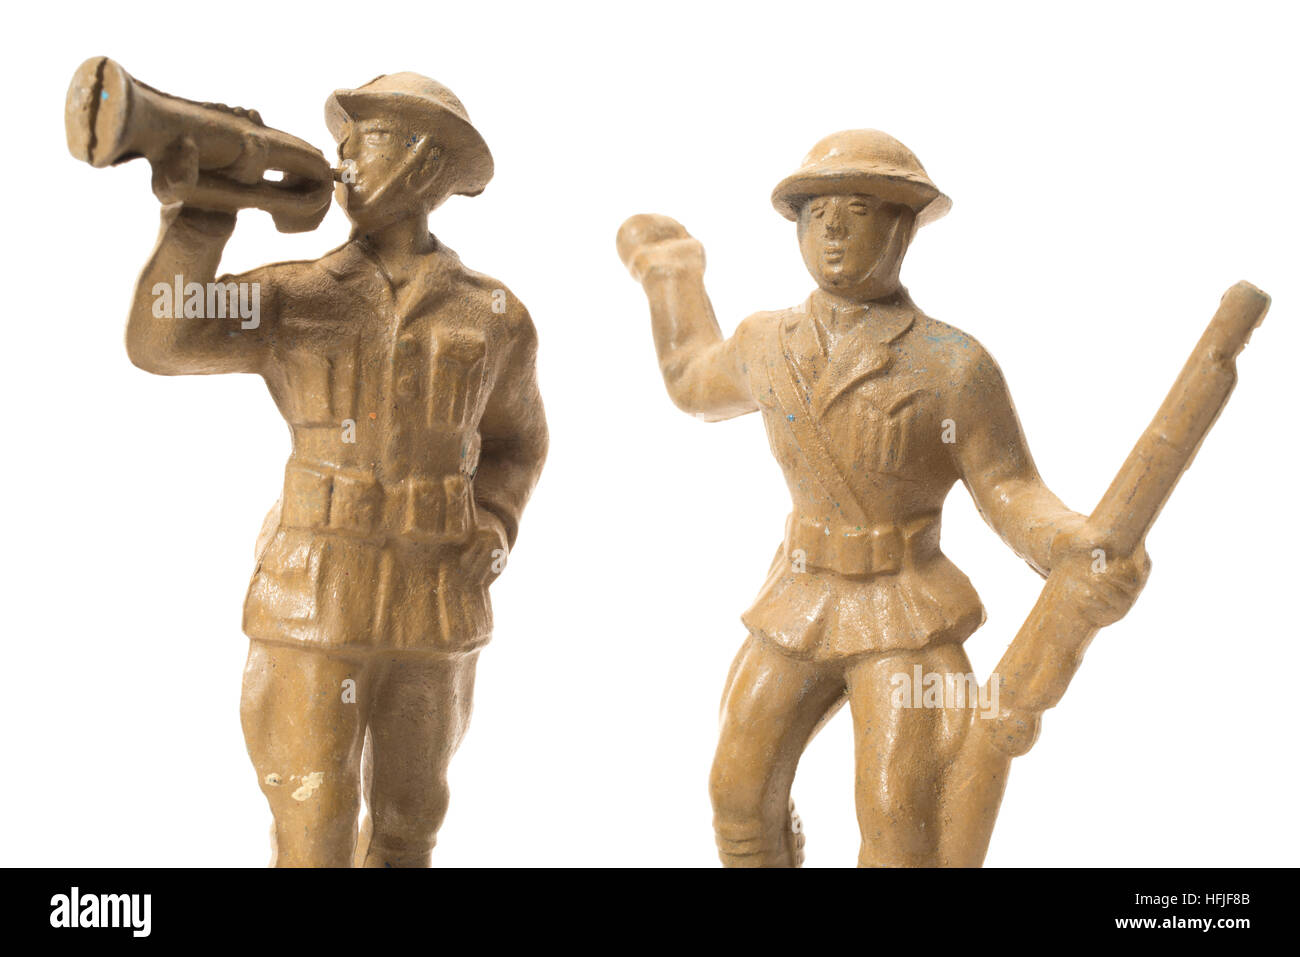 Soldados del Ejército de plástico Bergen Toy & Co. de novedad ( Beton ) producida por primera vez en 1938 Foto de stock